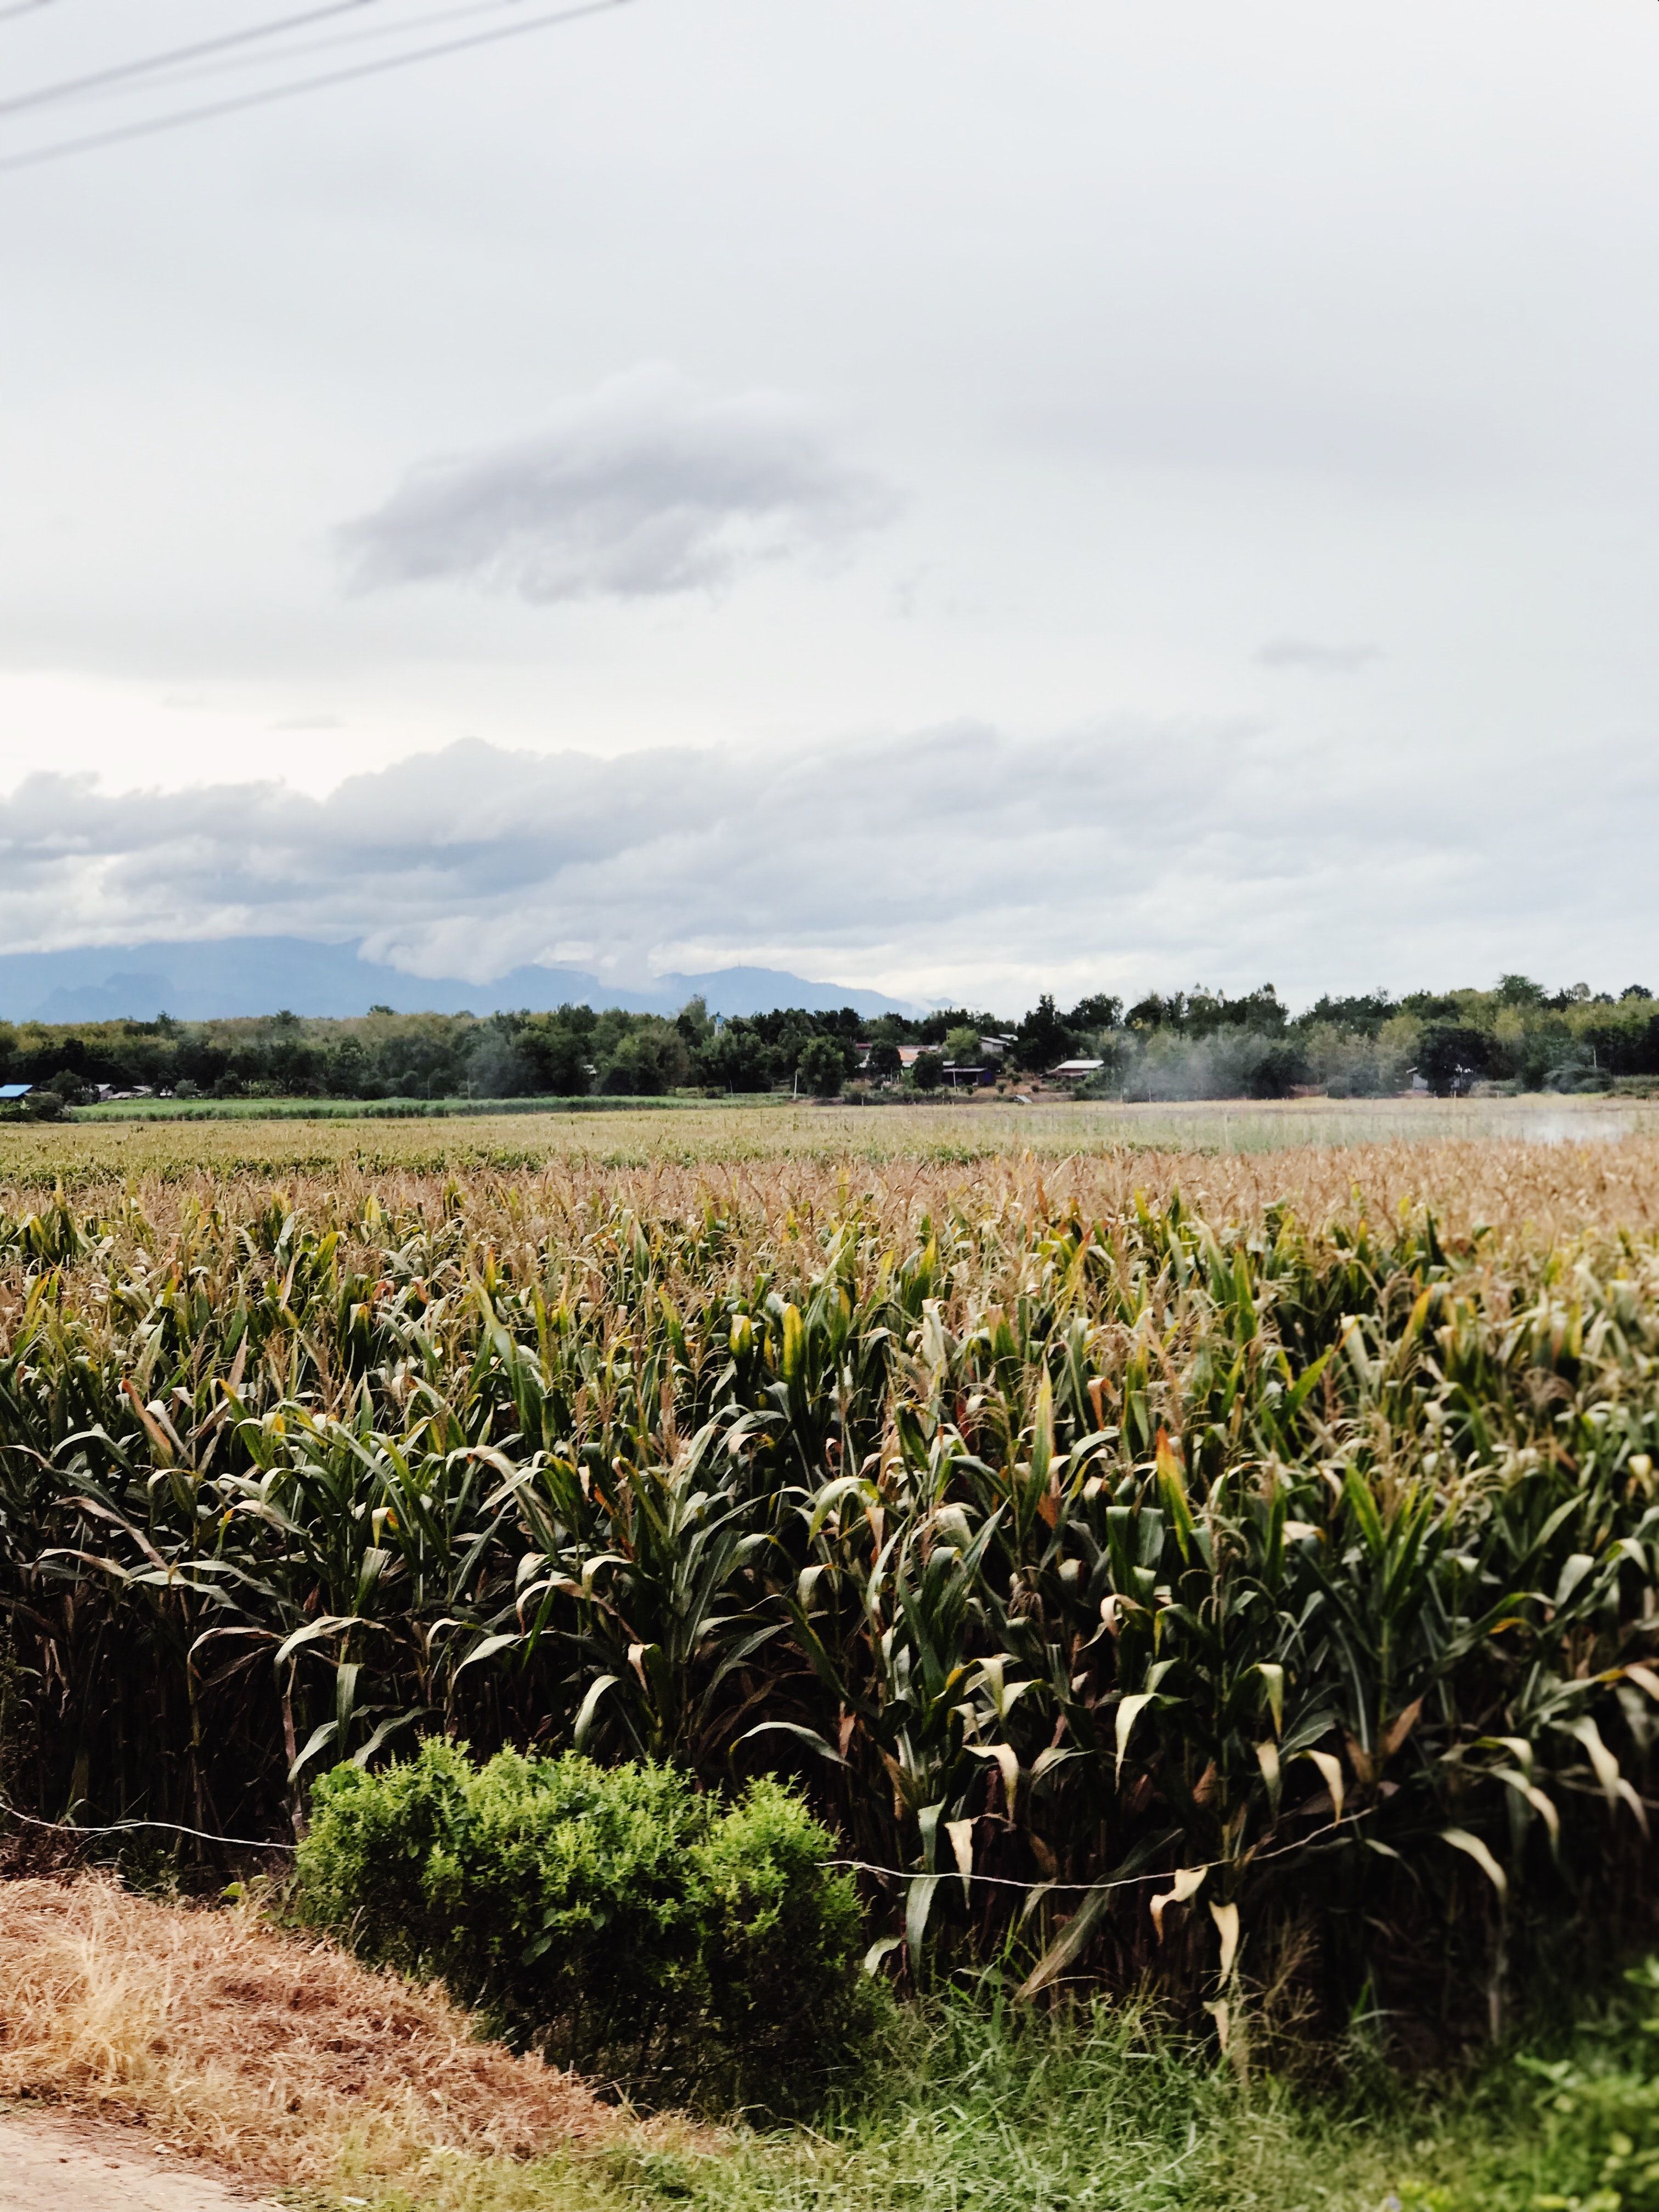 Photo of farmland by Milly Vueti on Unsplash